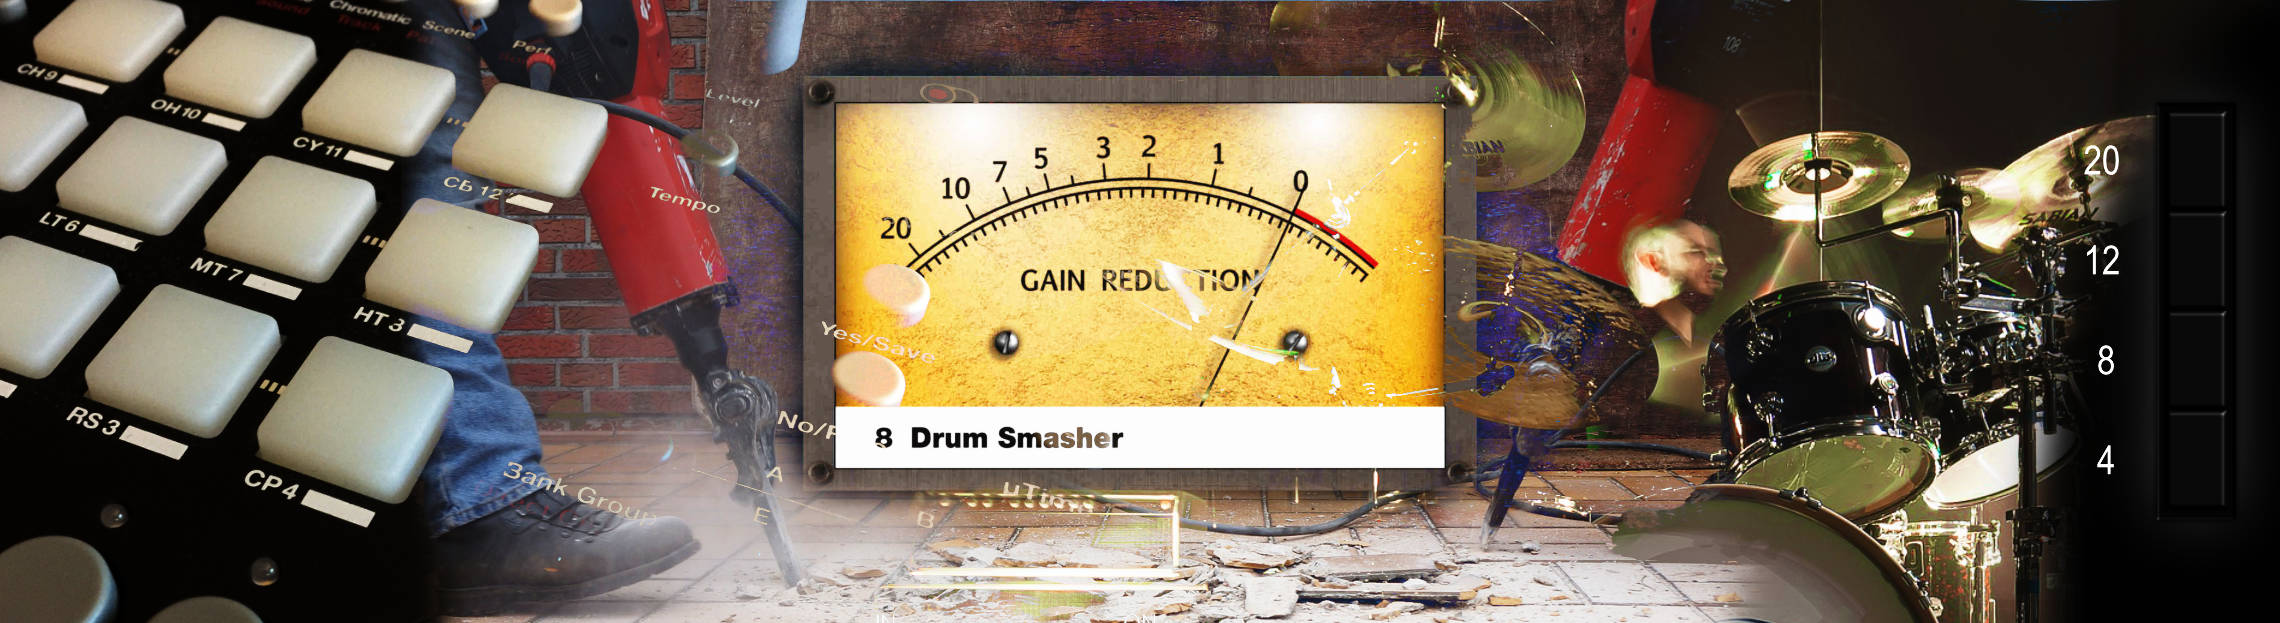 Schwerkraftmaschine Drum Smasher